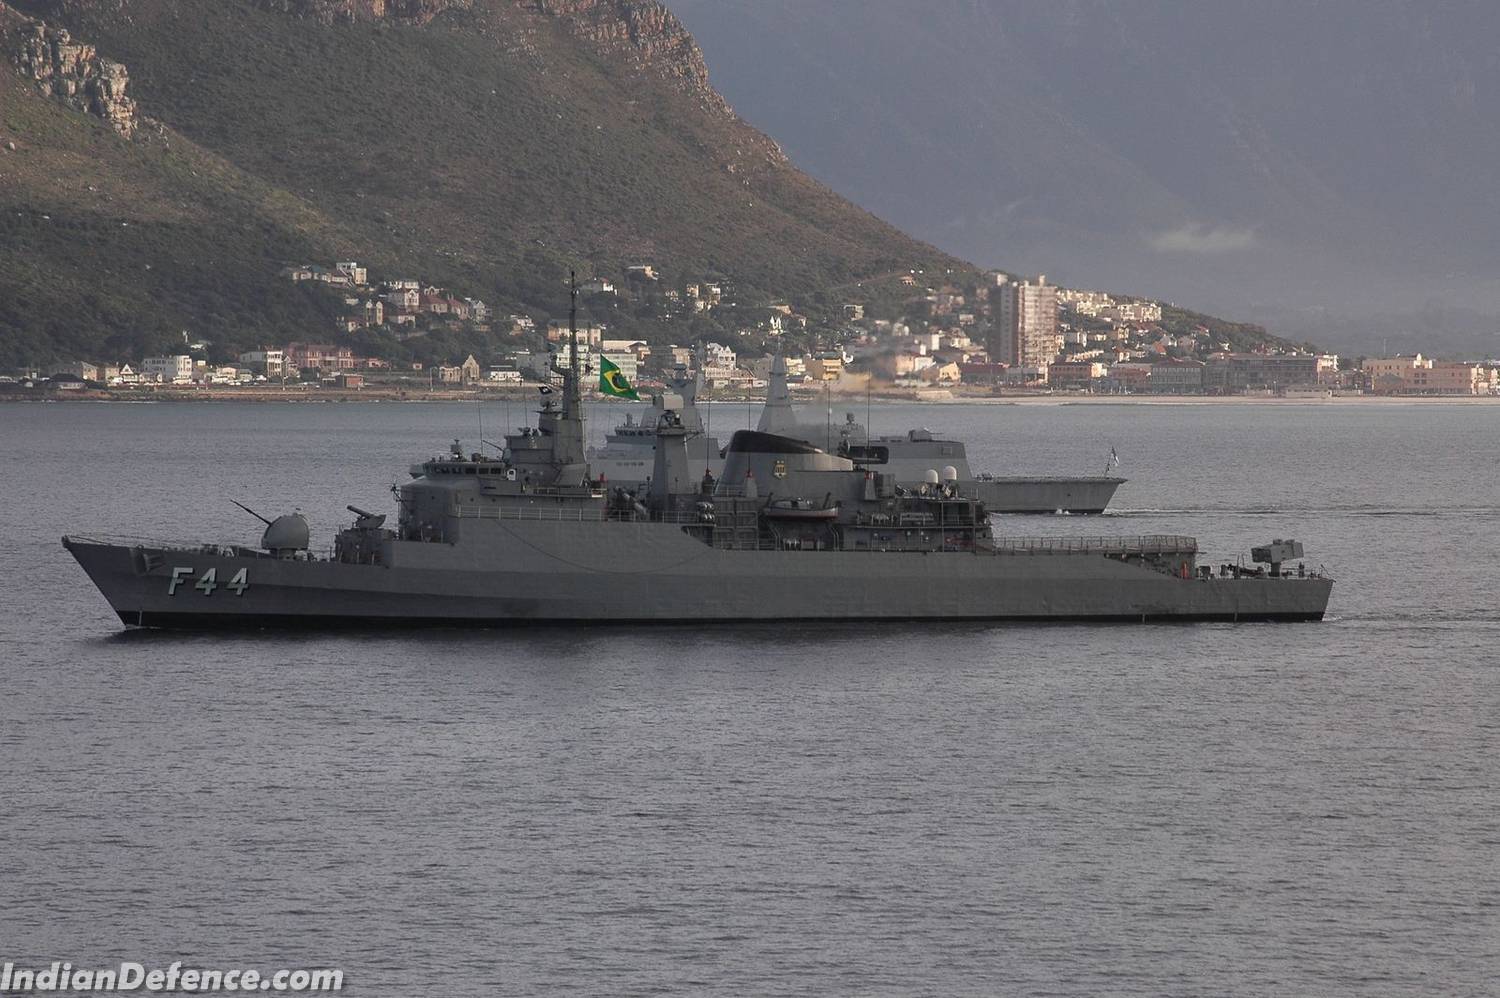 A Independência com uma fragata sul africana durante uma operação conjunta. (foto: IndianDefence.com)